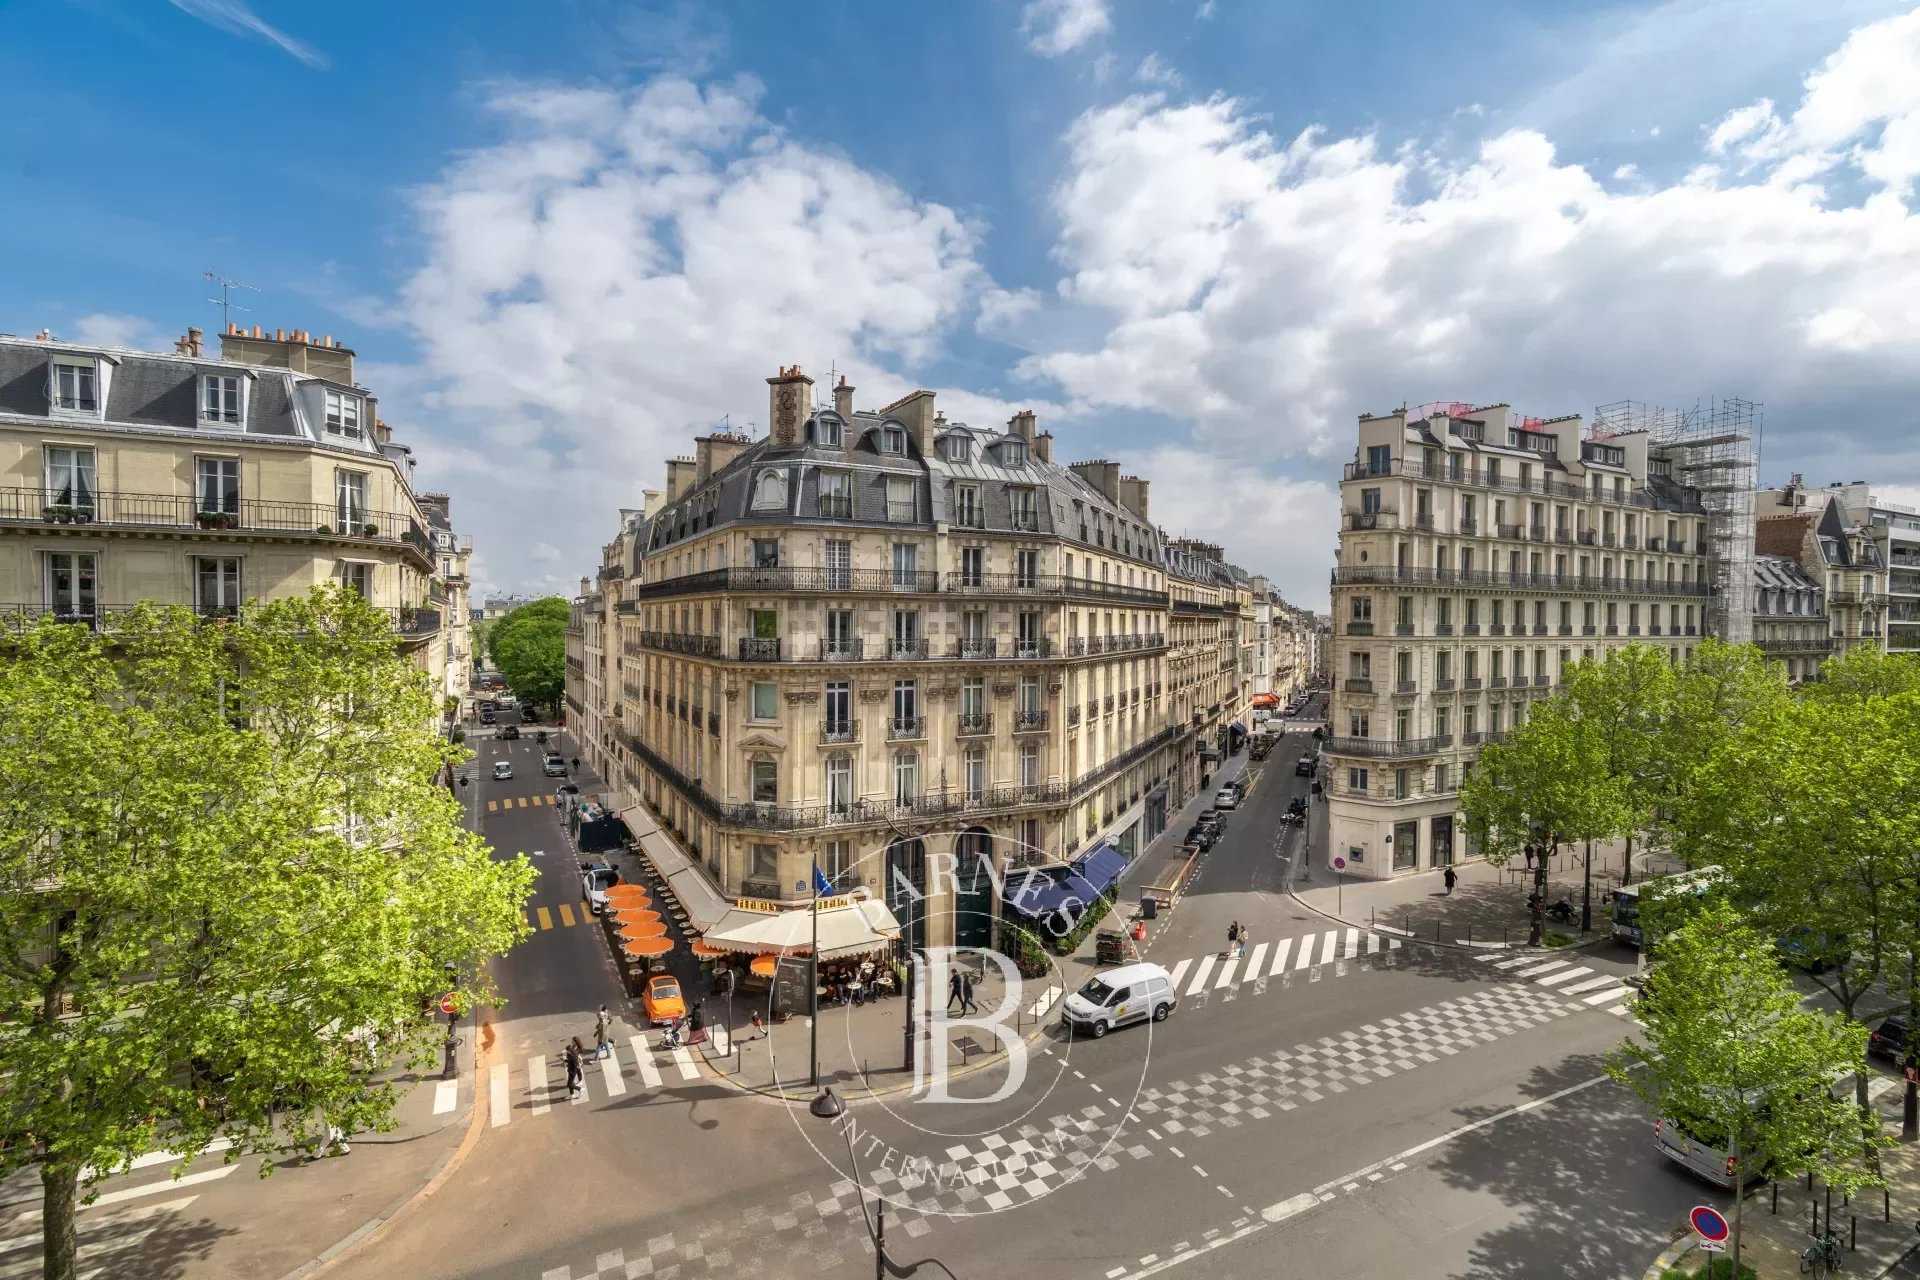 Paris  - Appartement 5 Pièces 2 Chambres